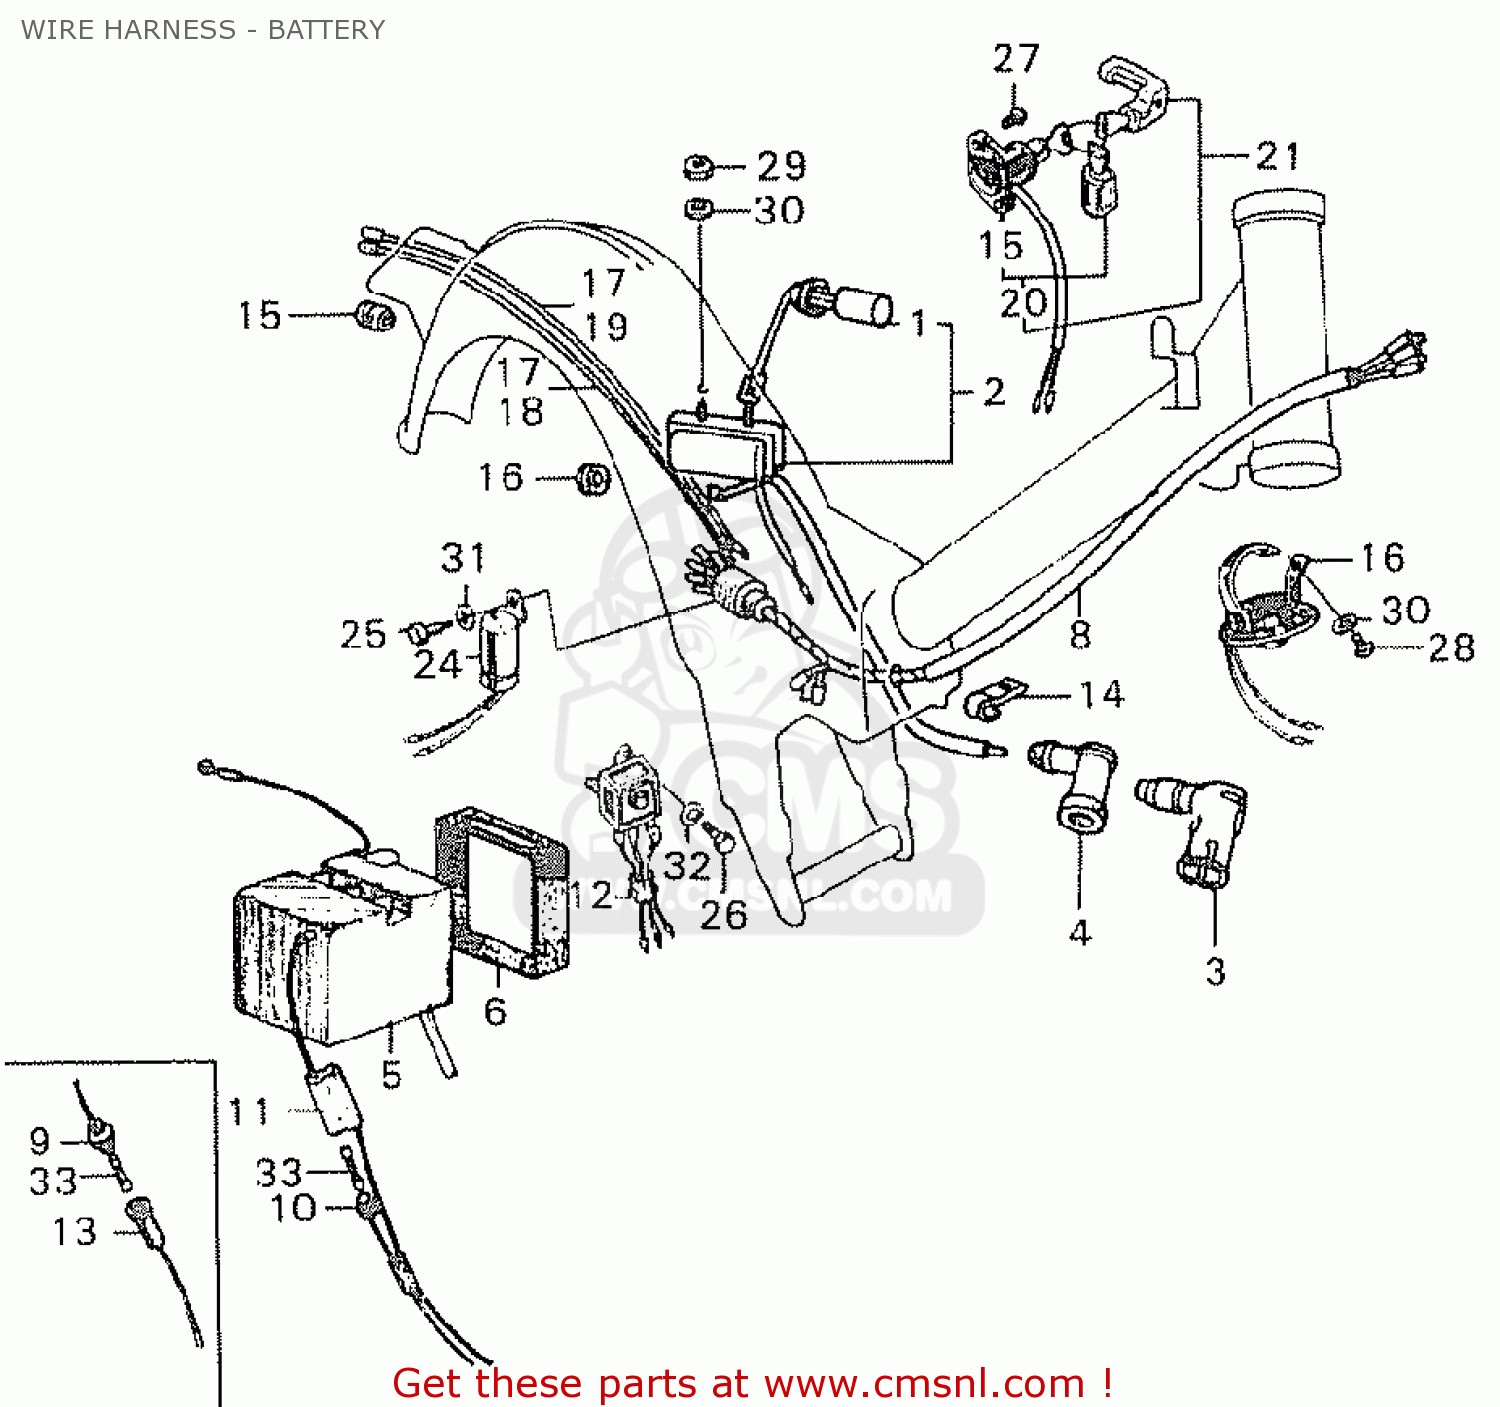 Honda C70 Engine Diagram Wiring Diagram for Honda C90 Honda Wiring Diagrams Instructions Of Honda C70 Engine Diagram